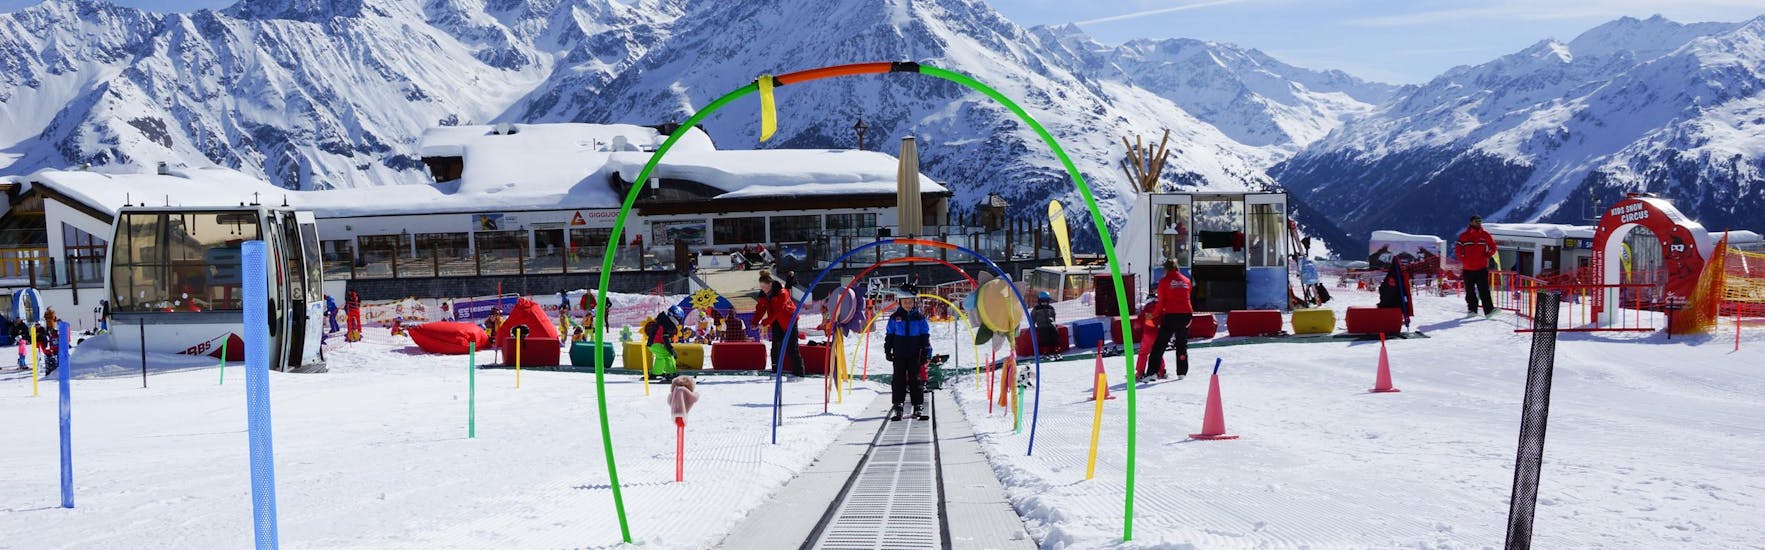 Cours de ski pour Enfants (4-15 ans) pour Tous niveaux.